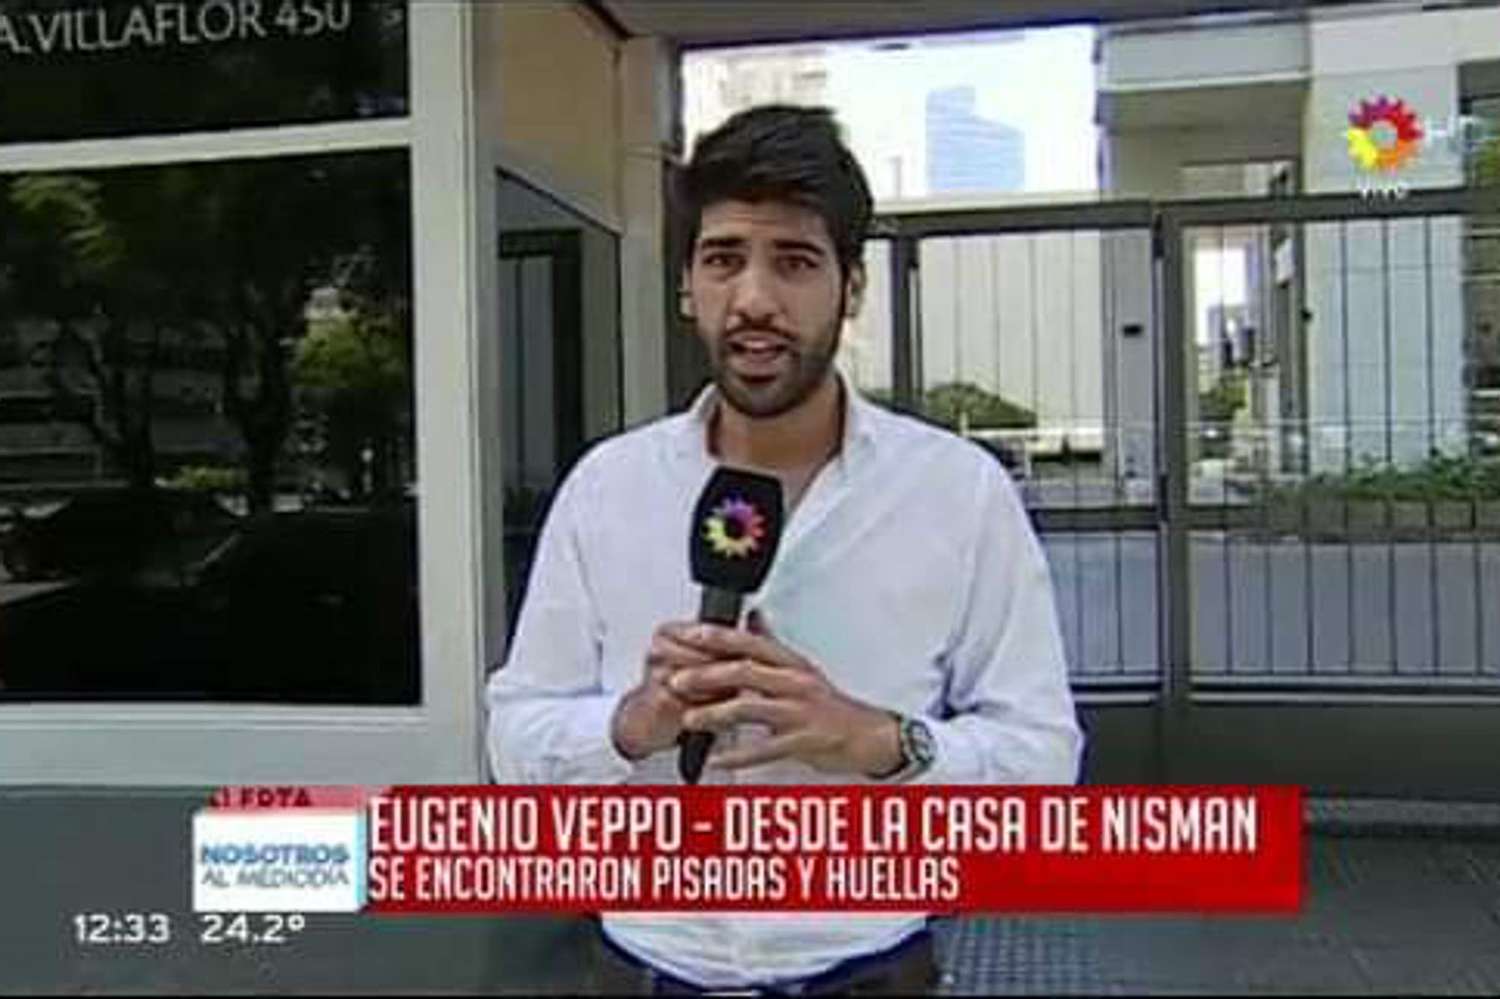 Quién es Eugenio Veppo, el periodista que atropelló y mató a una agente de tránsito